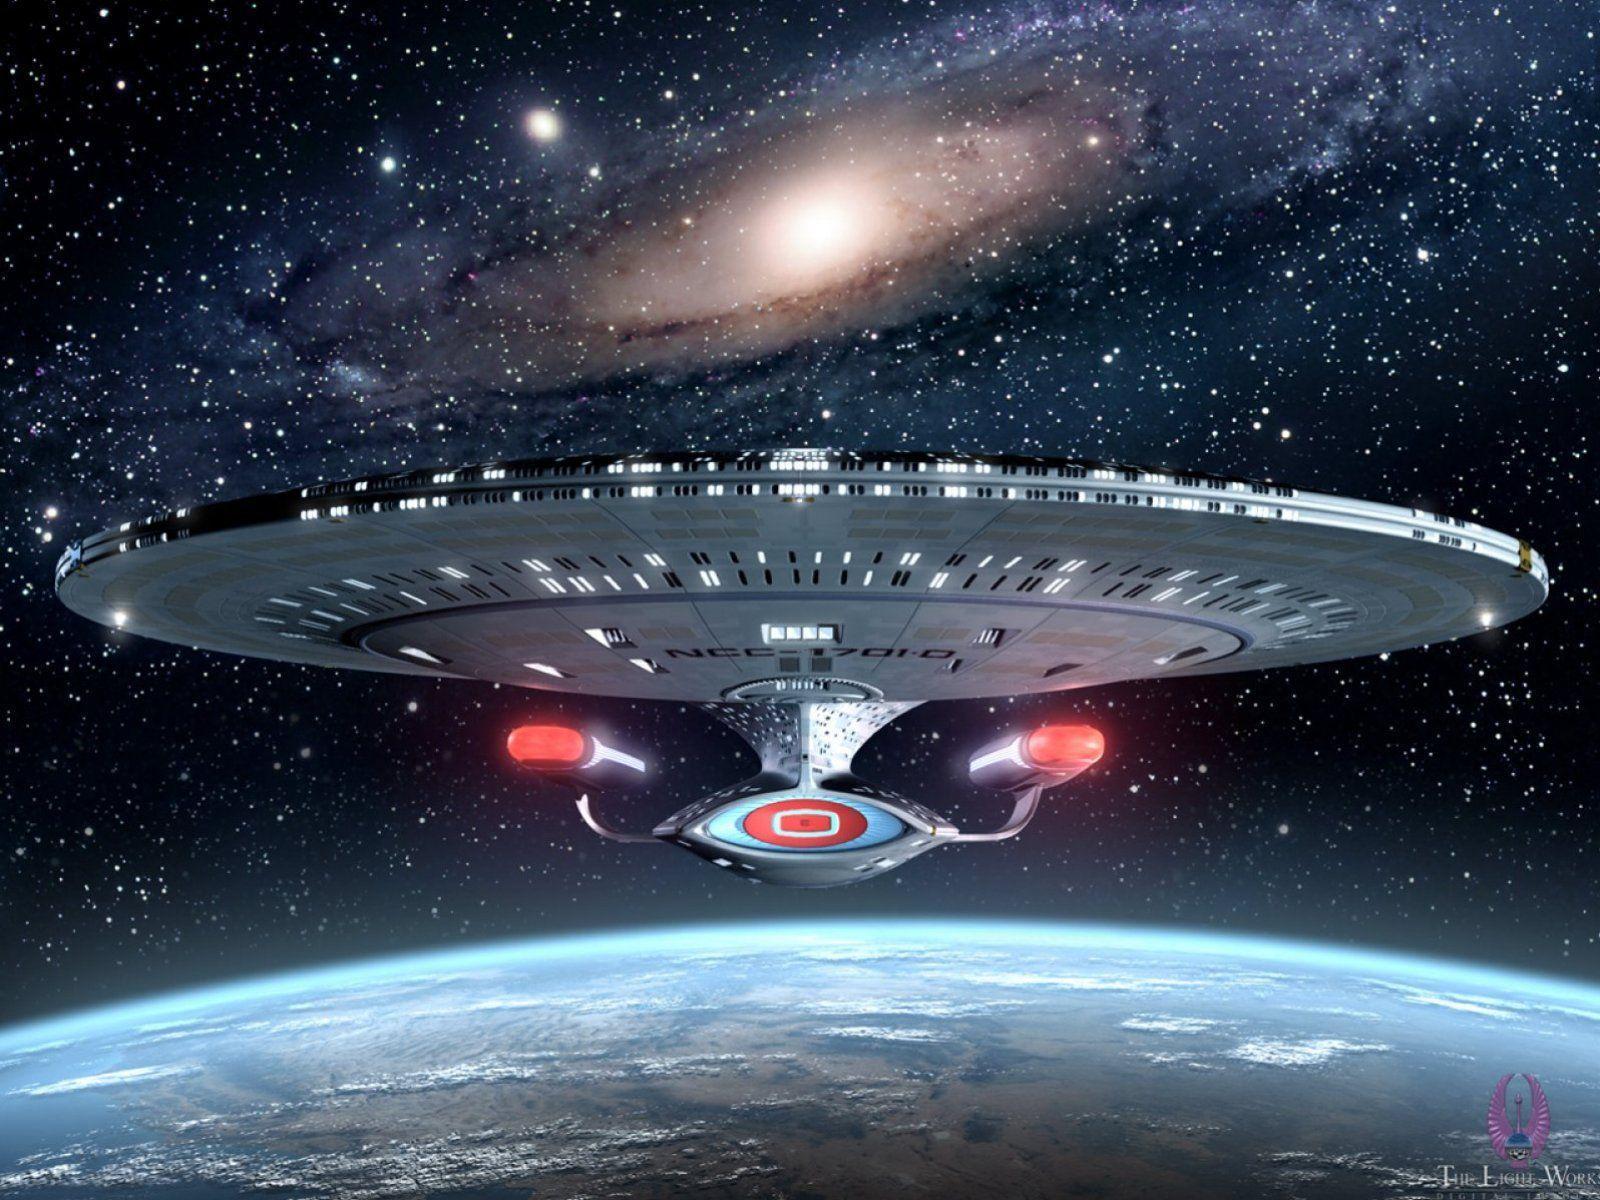 Starship "Enterprise" NCC1701D